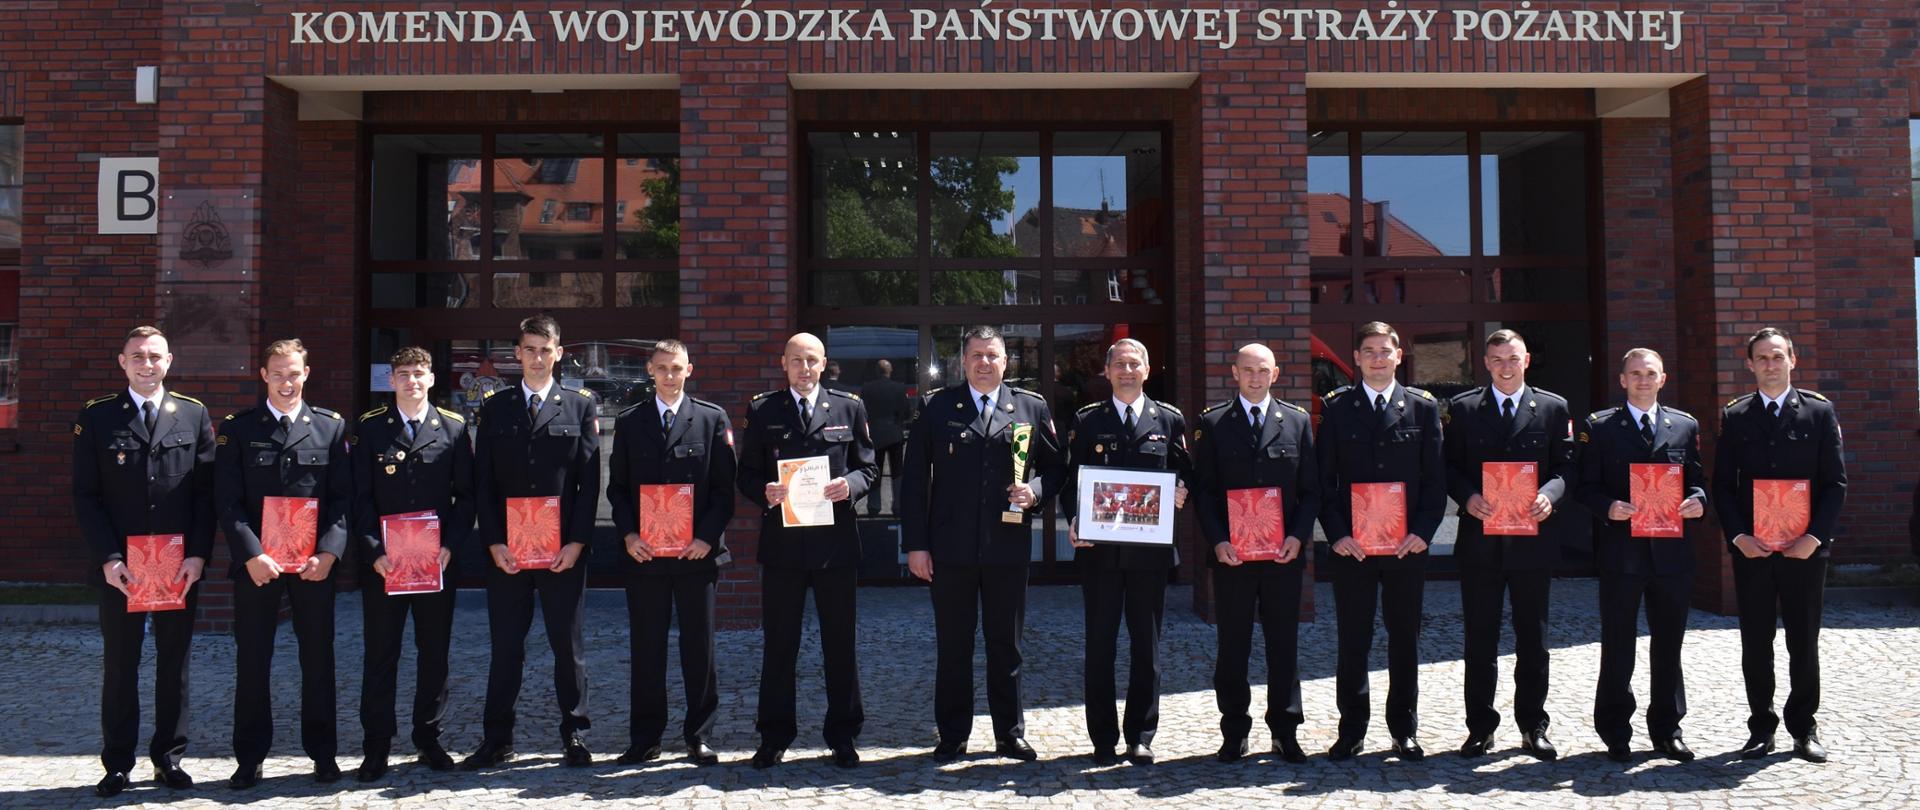 Spotkanie z drużyną strażaków z województwa dolnośląskiego.